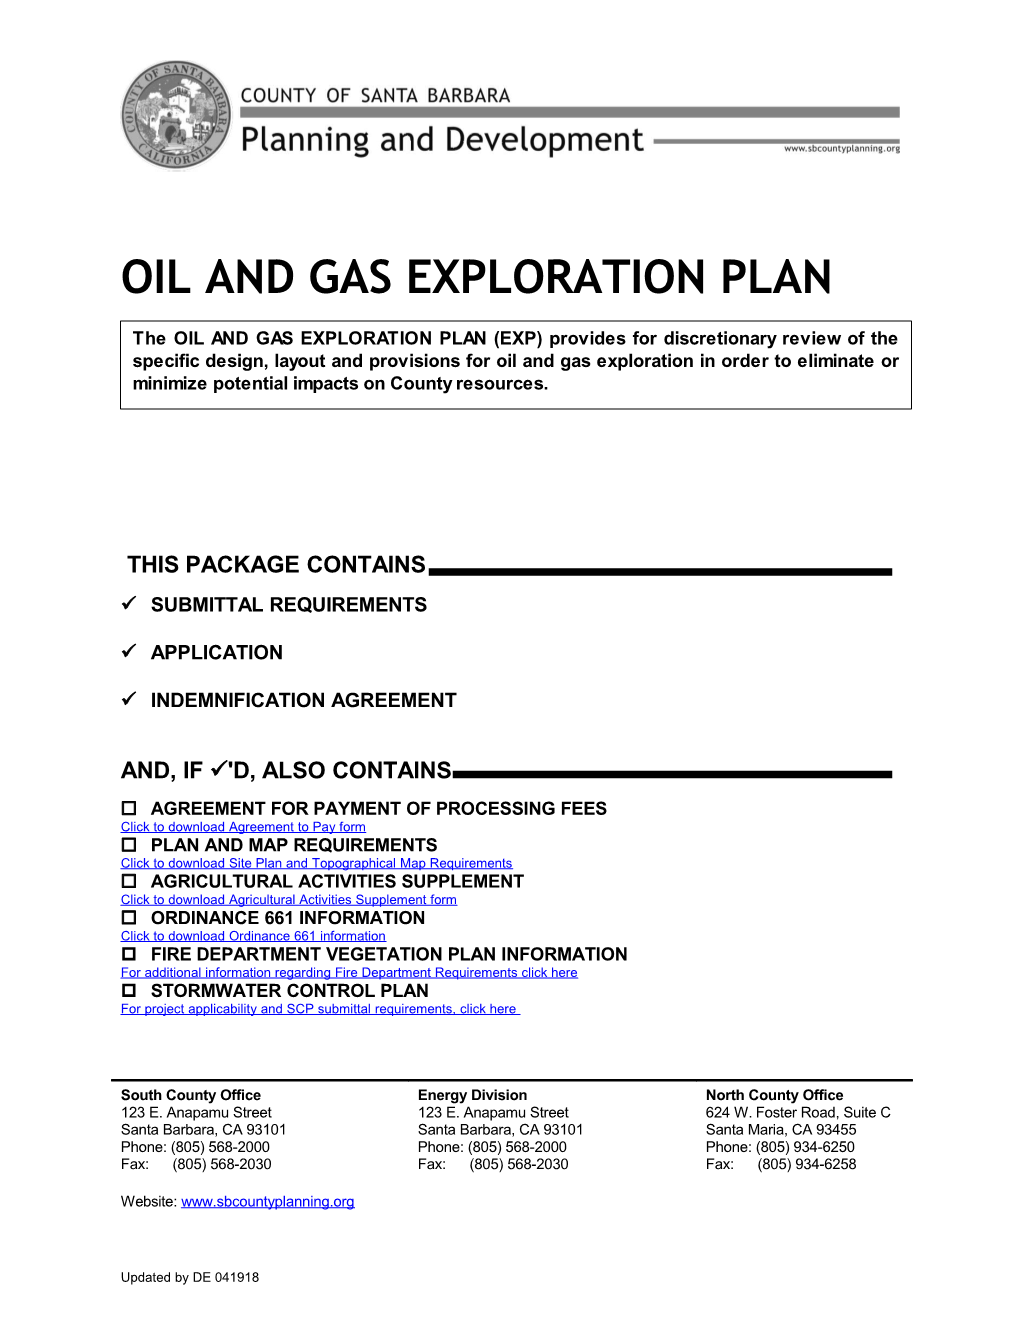 Oil & Gas Exploration Plan